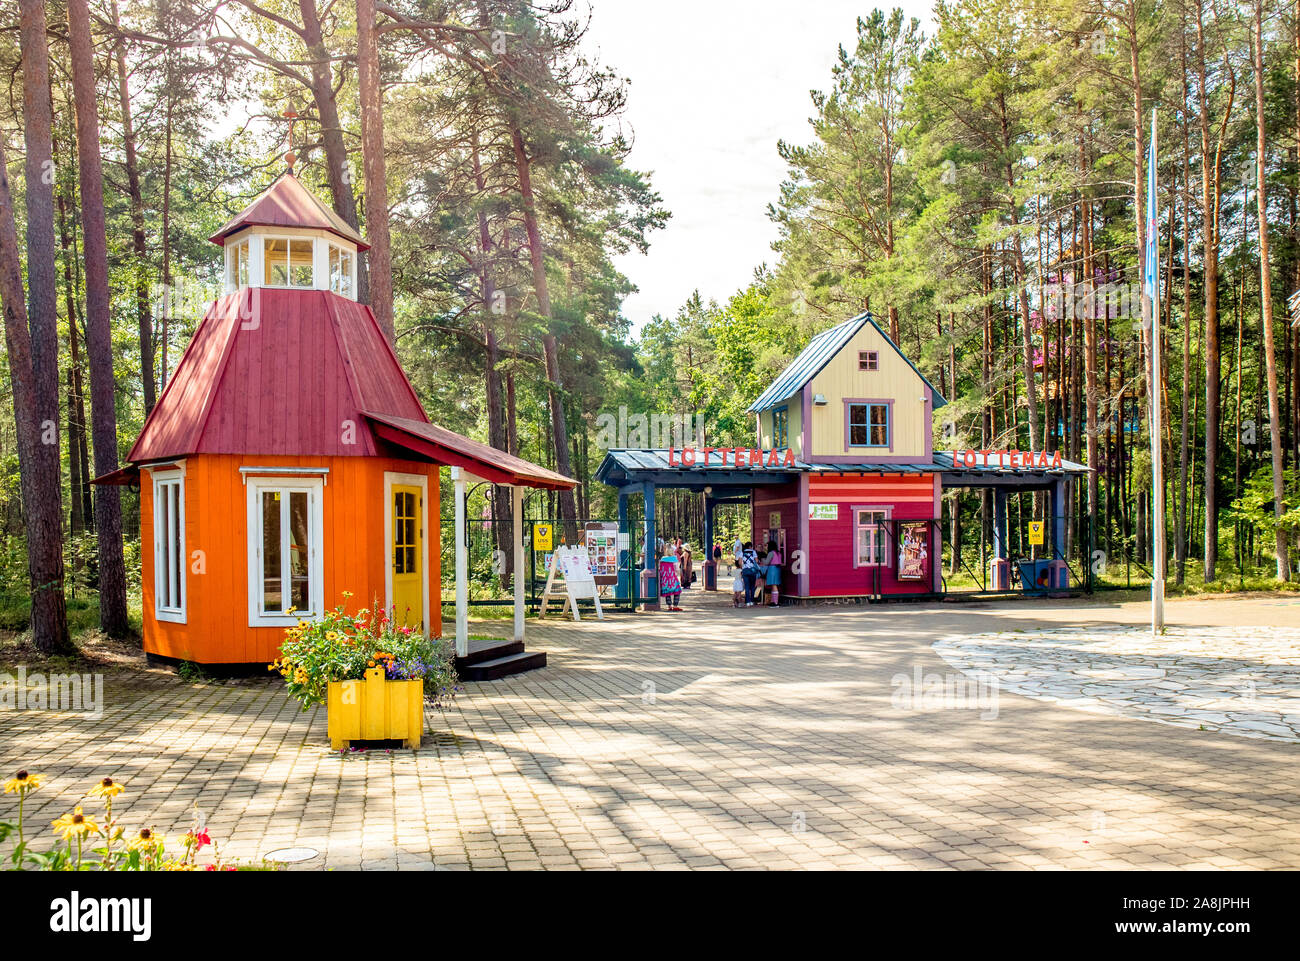 Reiu küla, Pärnumaa/Estonia-23Jul2019: Kinder-Freizeitpark Lottemaa (Dorf Lotte) mit bunten Holzhäusern in Wald, gebaut von Lotte Auto Stockfoto